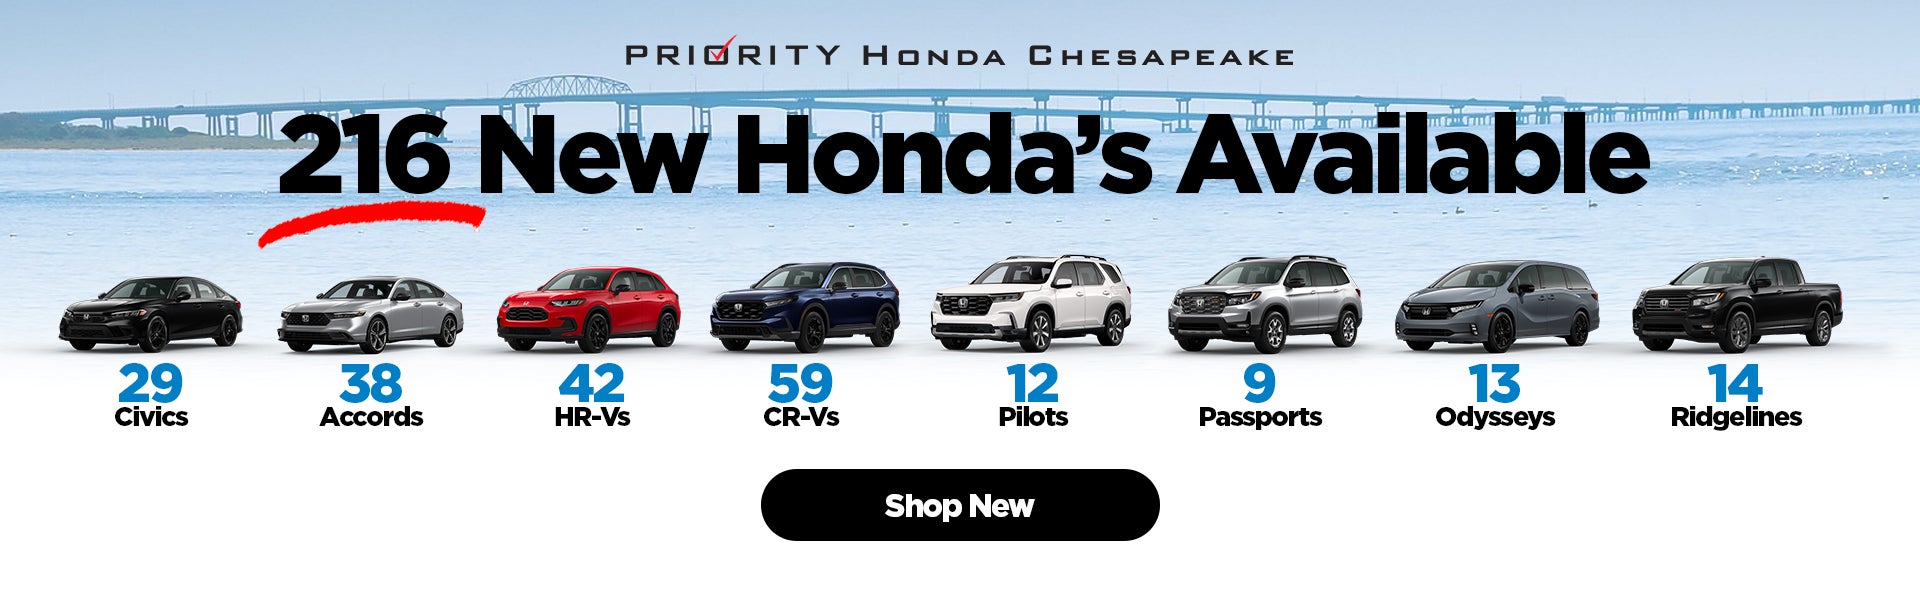 New Honda's Available